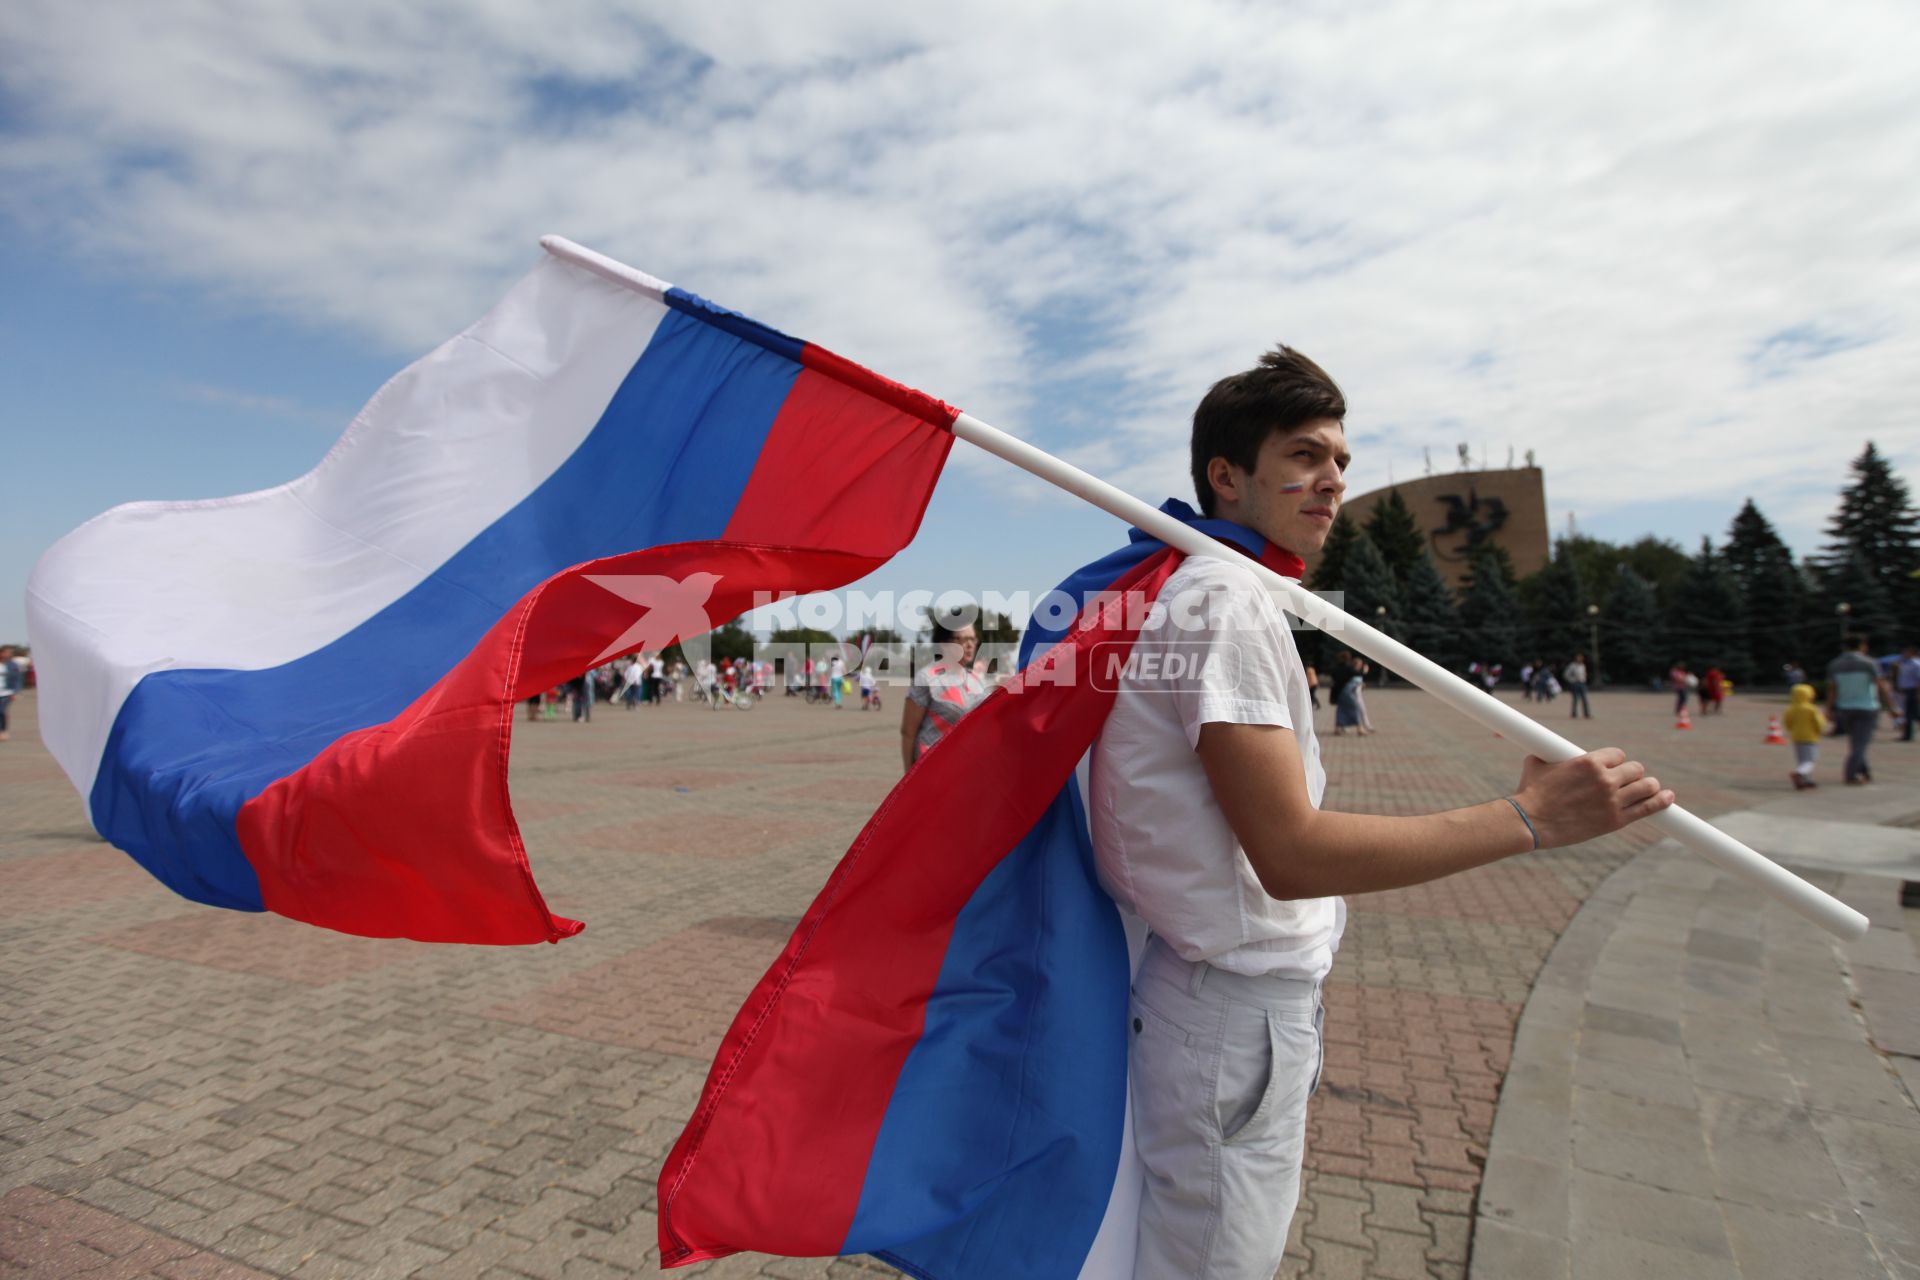 Ставрополь. Молодой человек с флагами РФ во время празднования Дня российского флага.